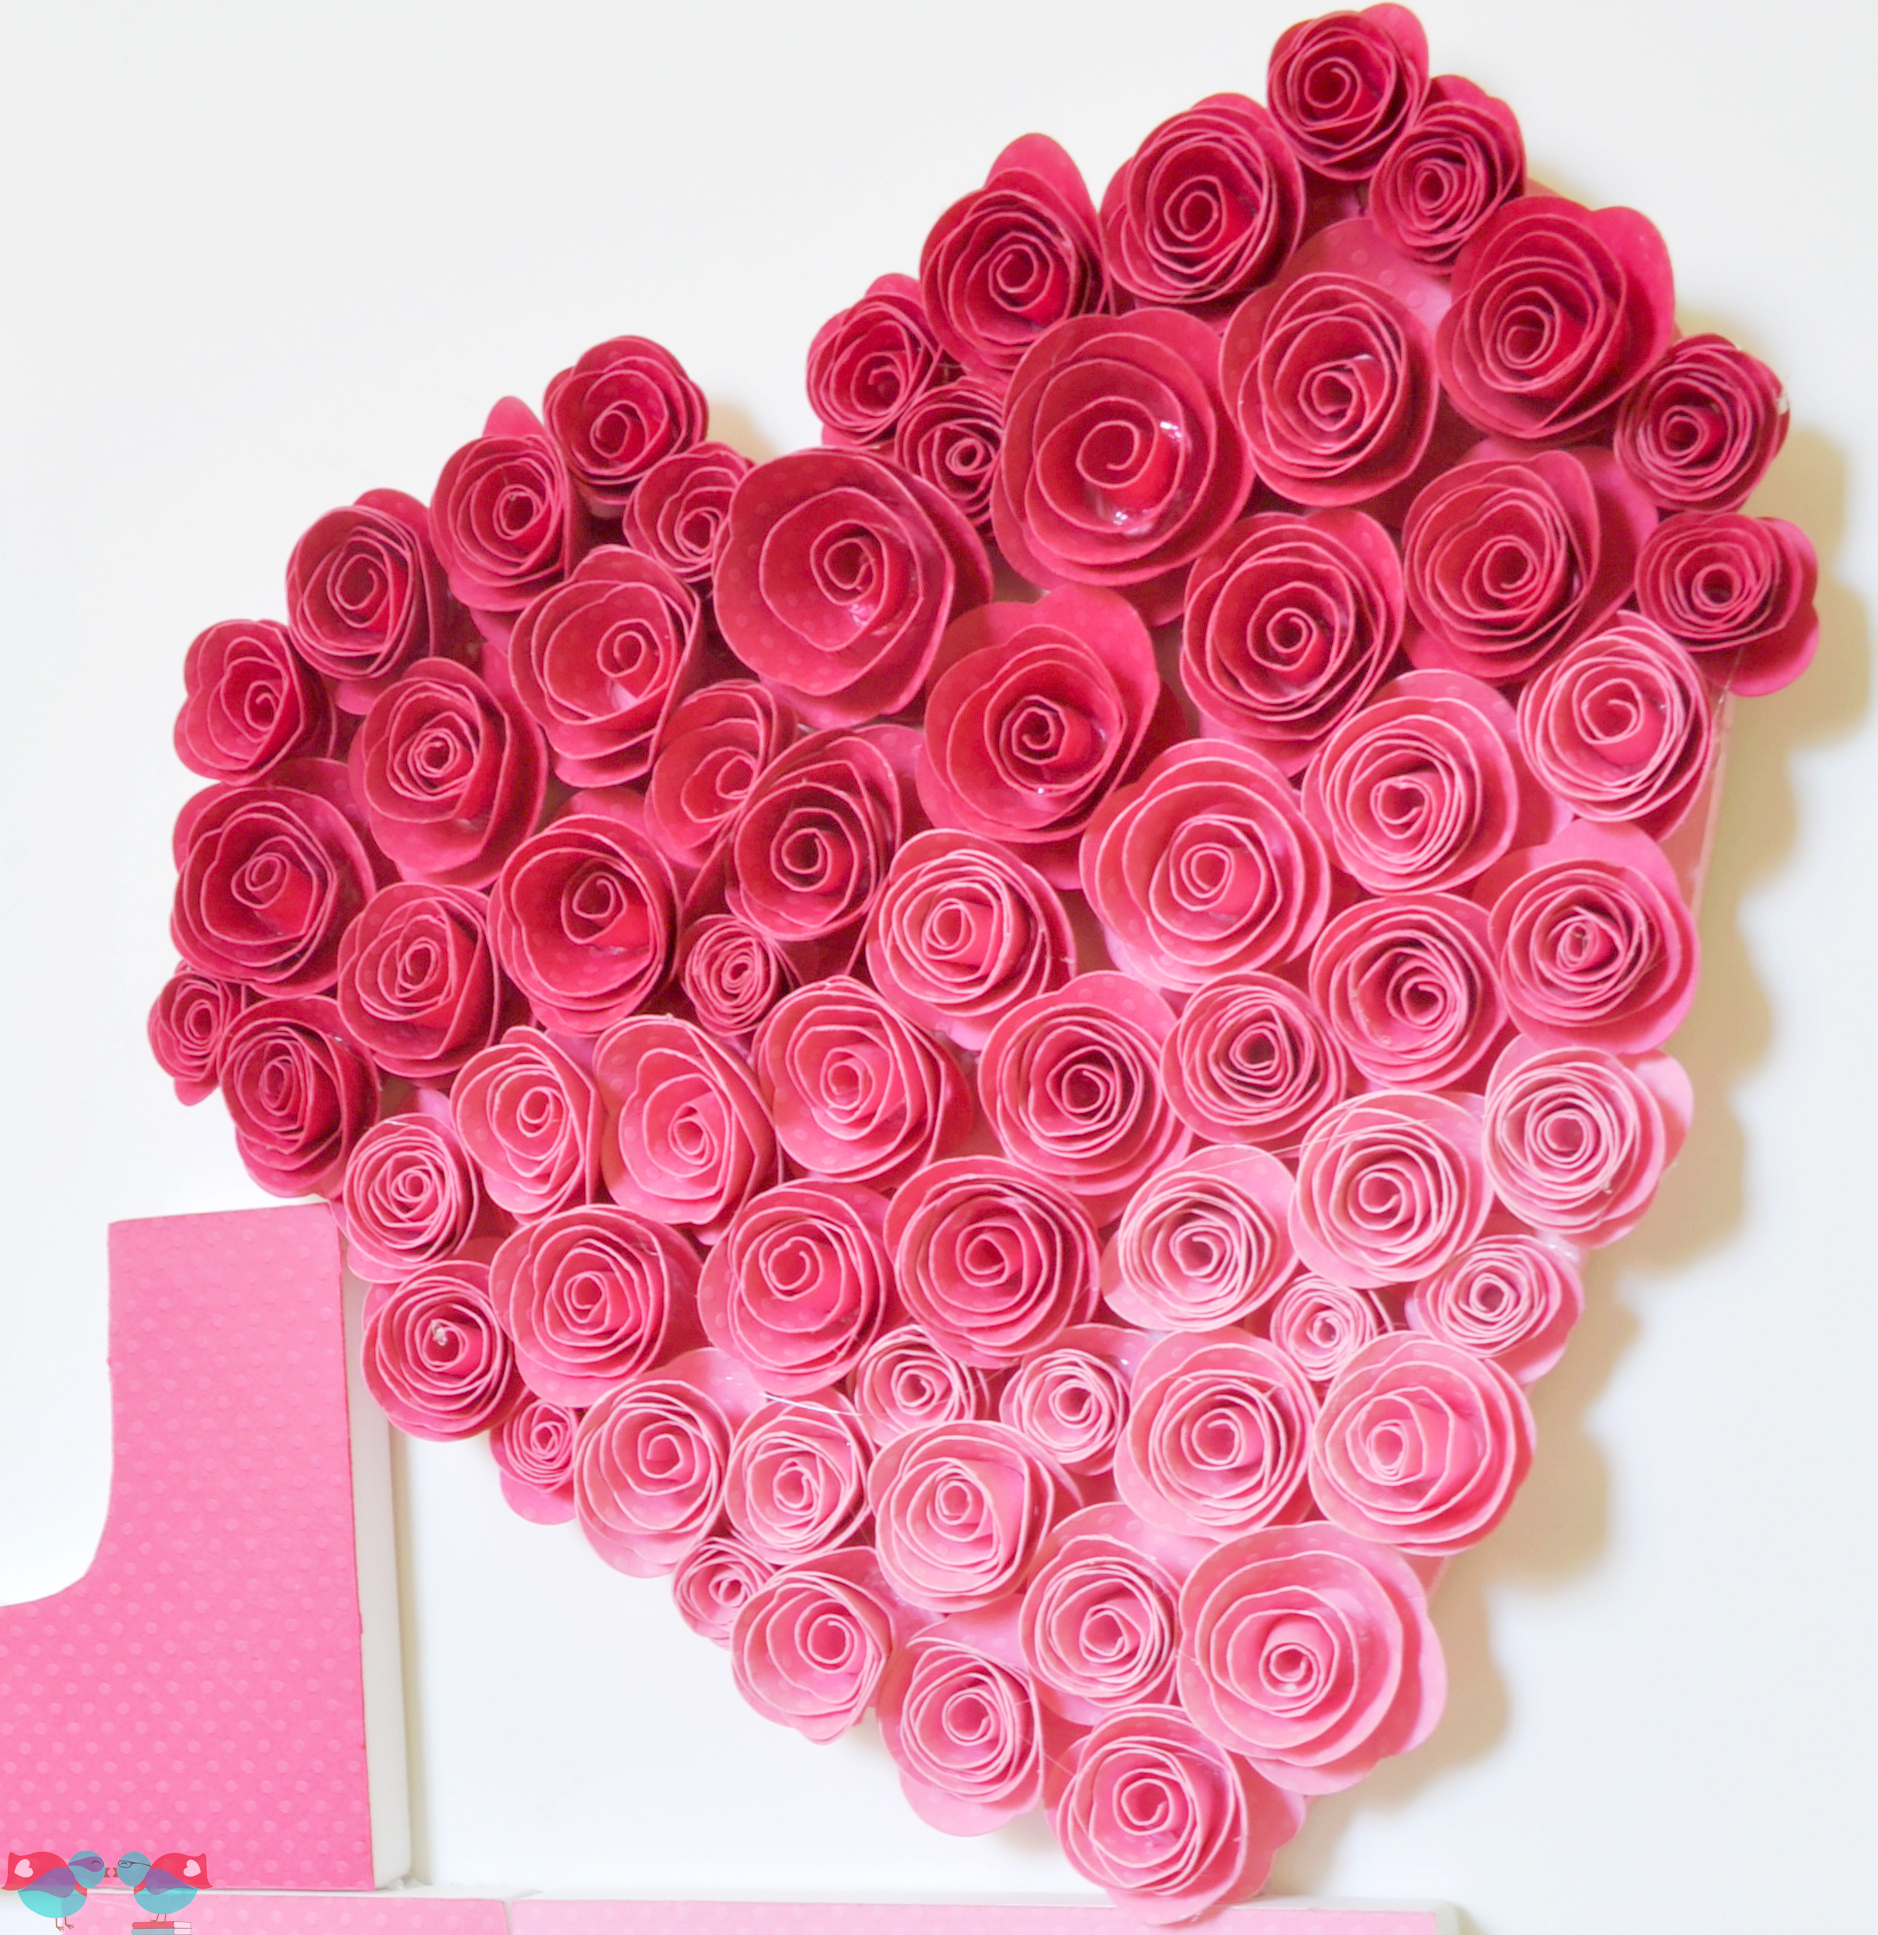 Rose Love Heart